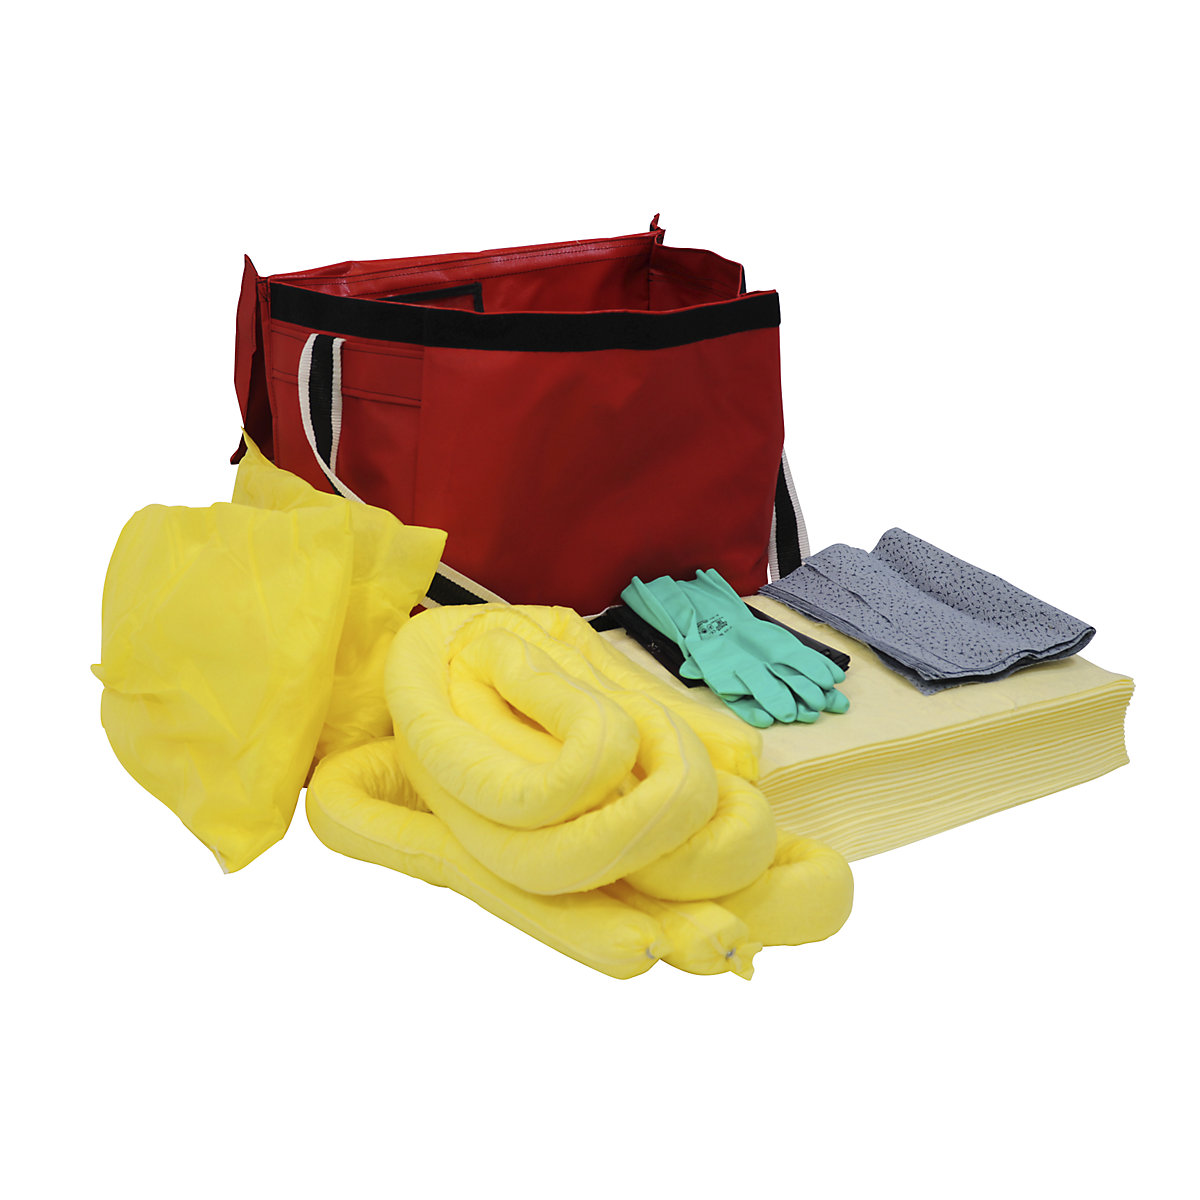 Vészhelyzeti készlet szivárgáshoz, PVC táskában, vegyszerekhez alkalmas kivitel-7